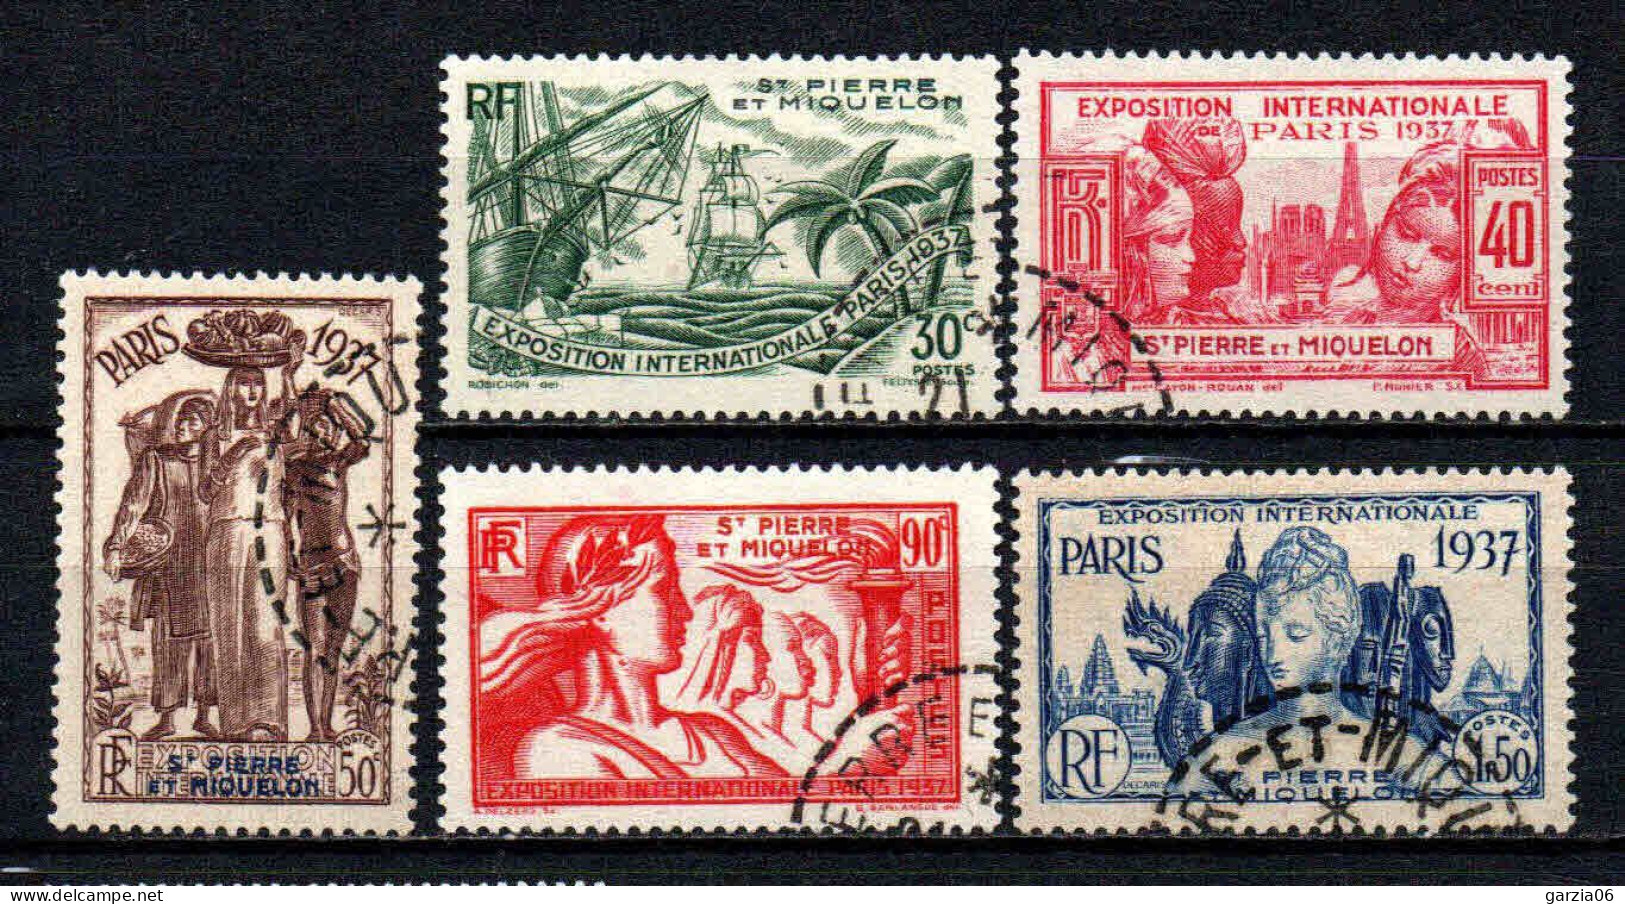 St Pierre Et Miquelon - 1937 - Exposition Internationale De Paris - N° 161 à 165 - Oblit - Used - Used Stamps